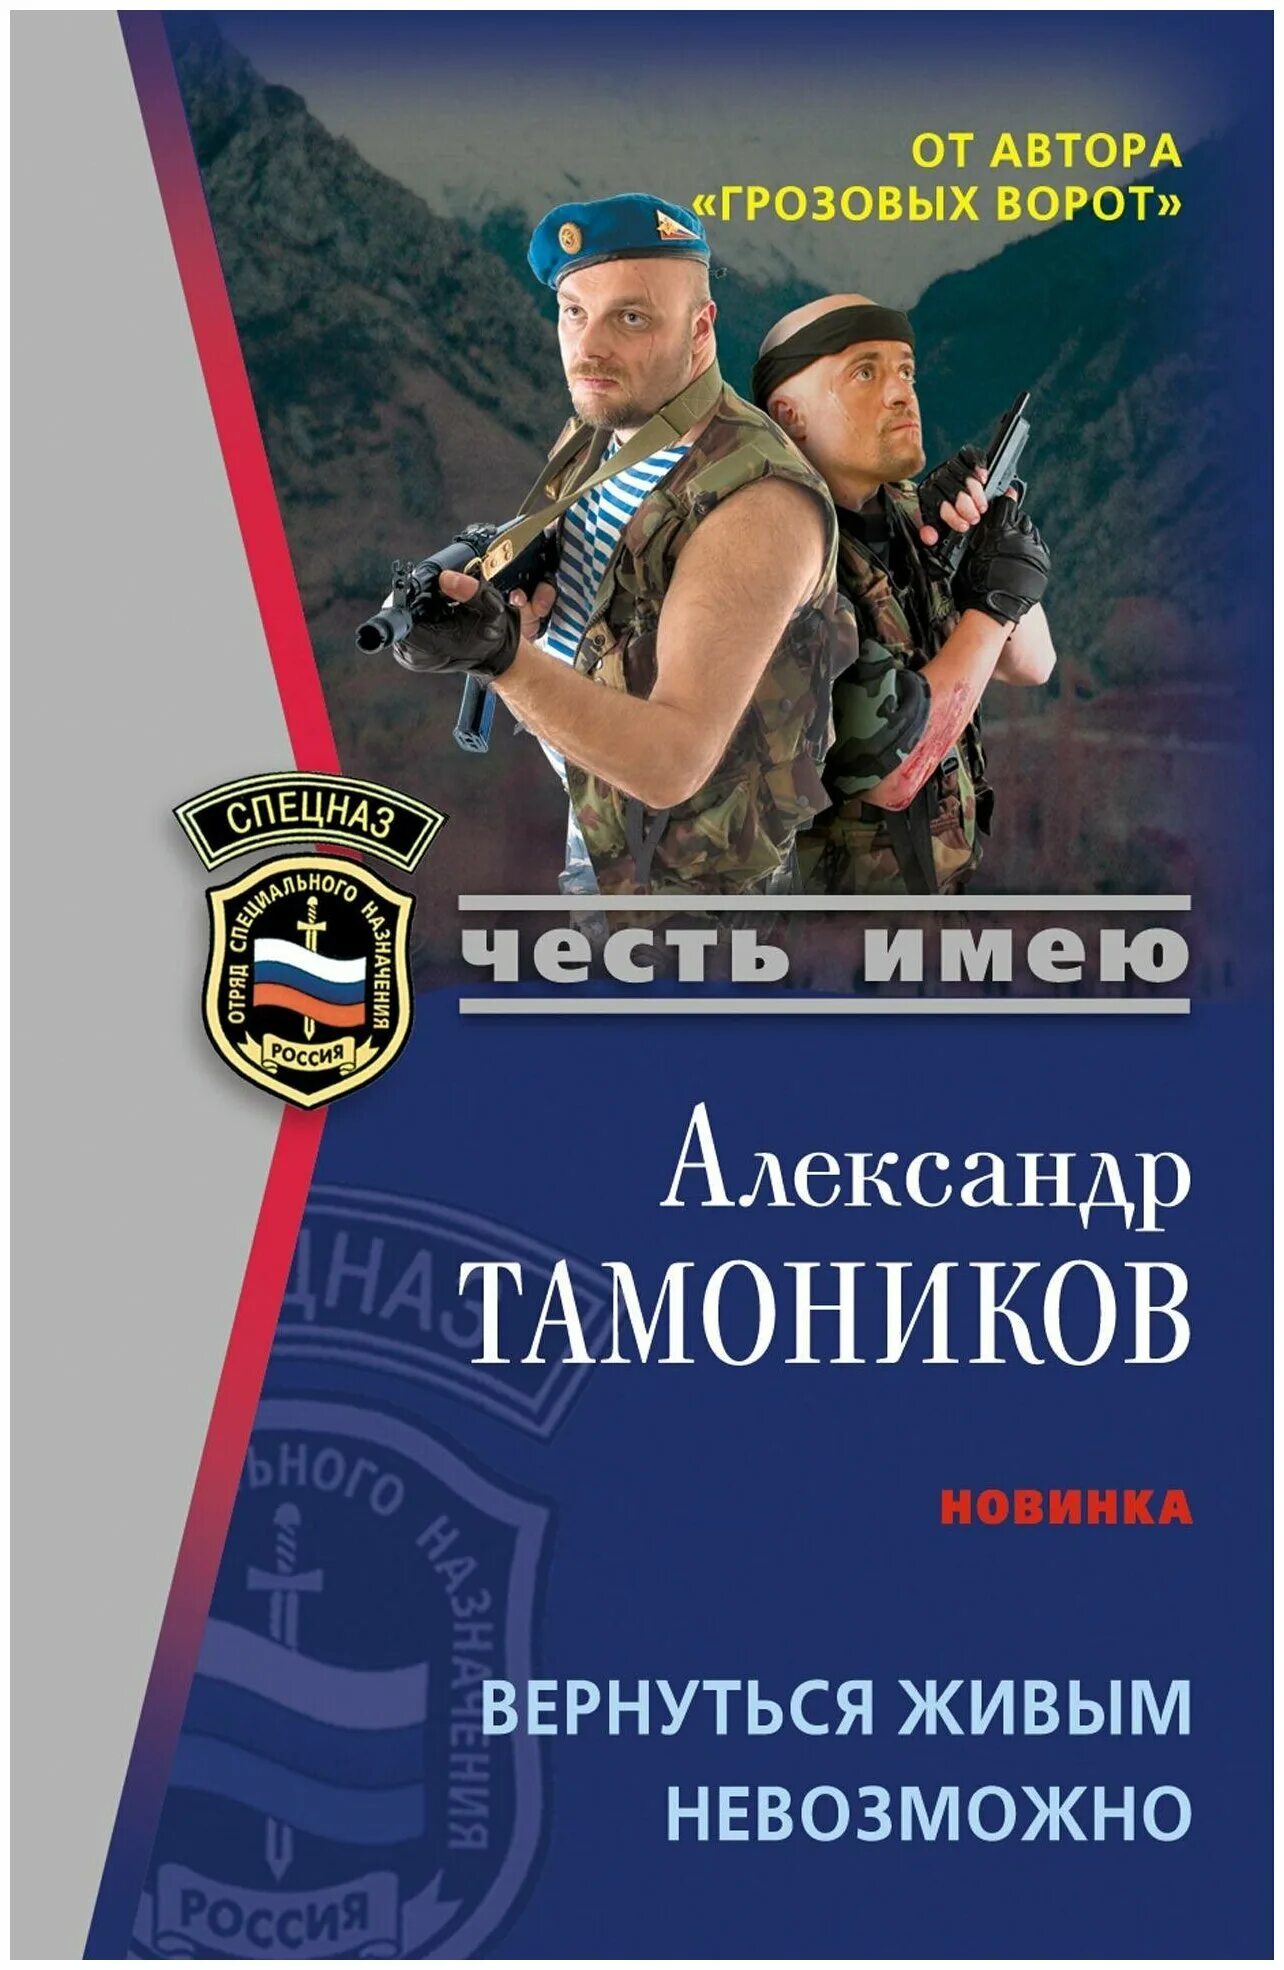 Авторы книг российских боевиков